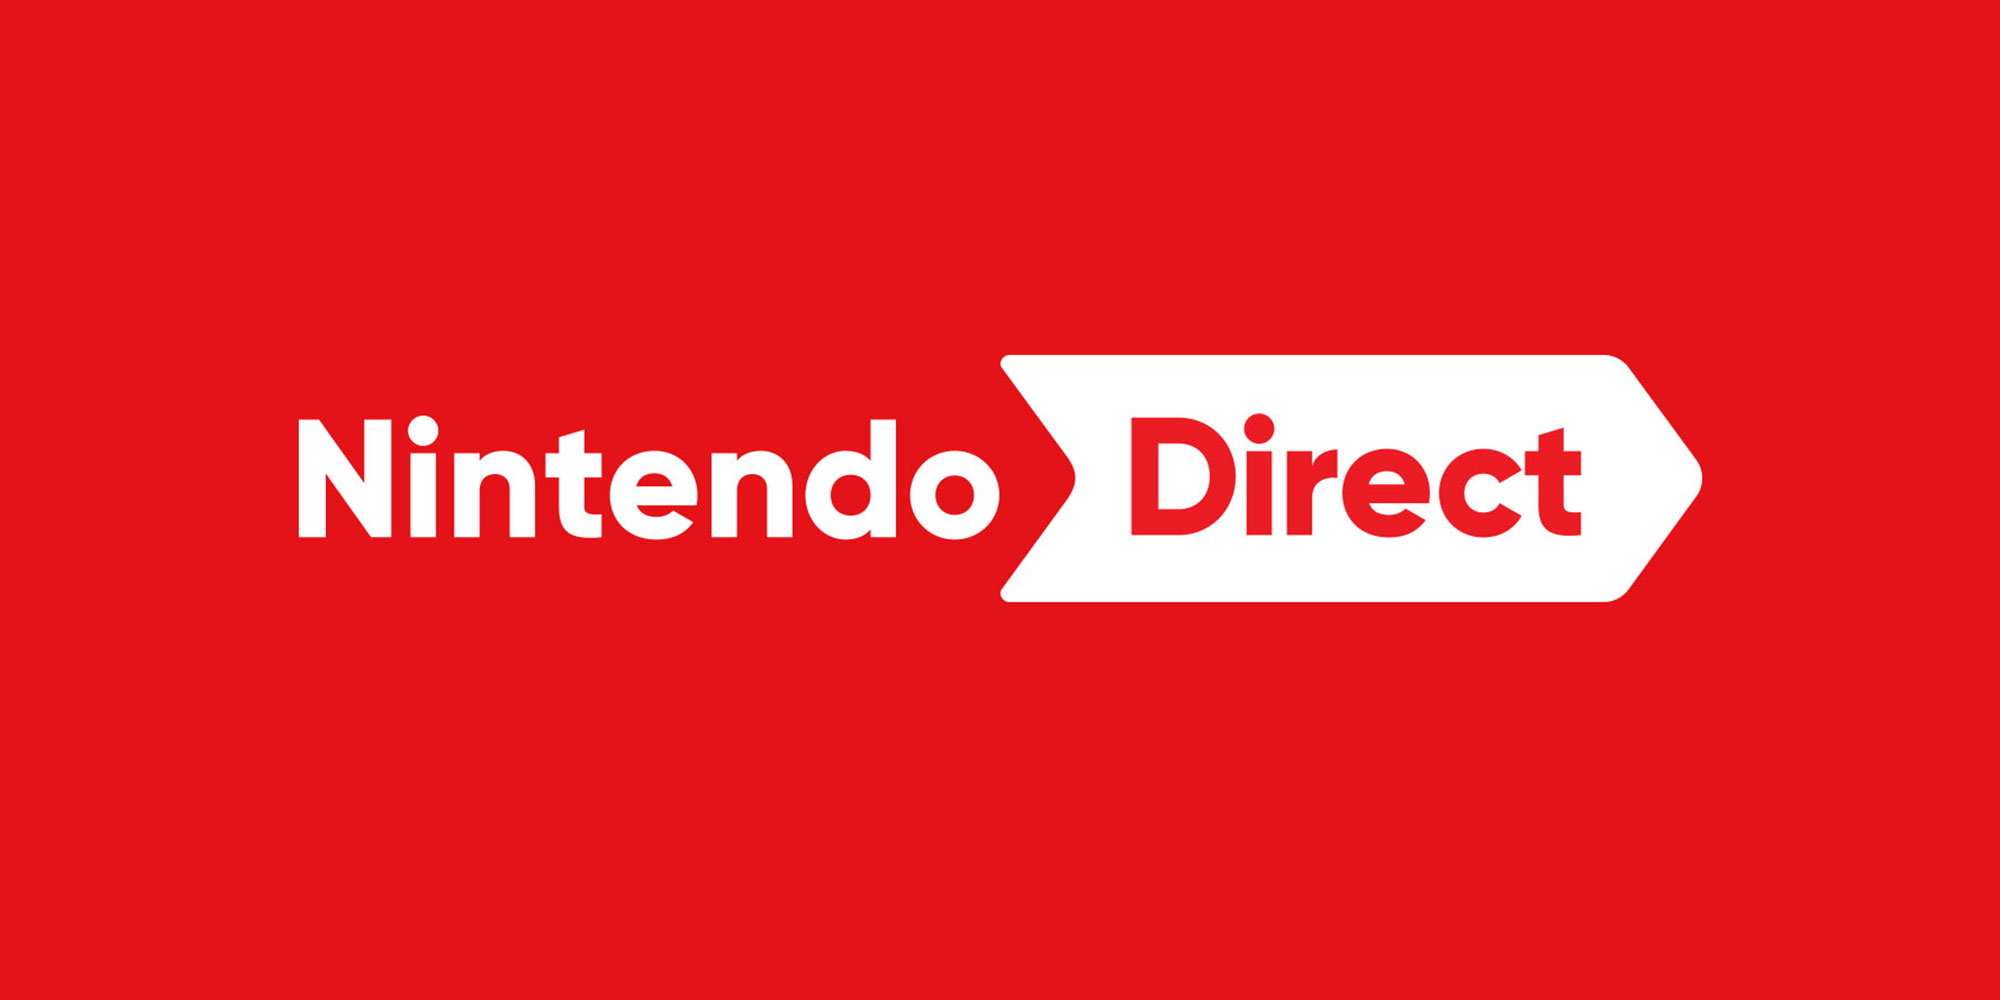 Insiders: Nintendo Direct kan volgende week al plaatsvinden